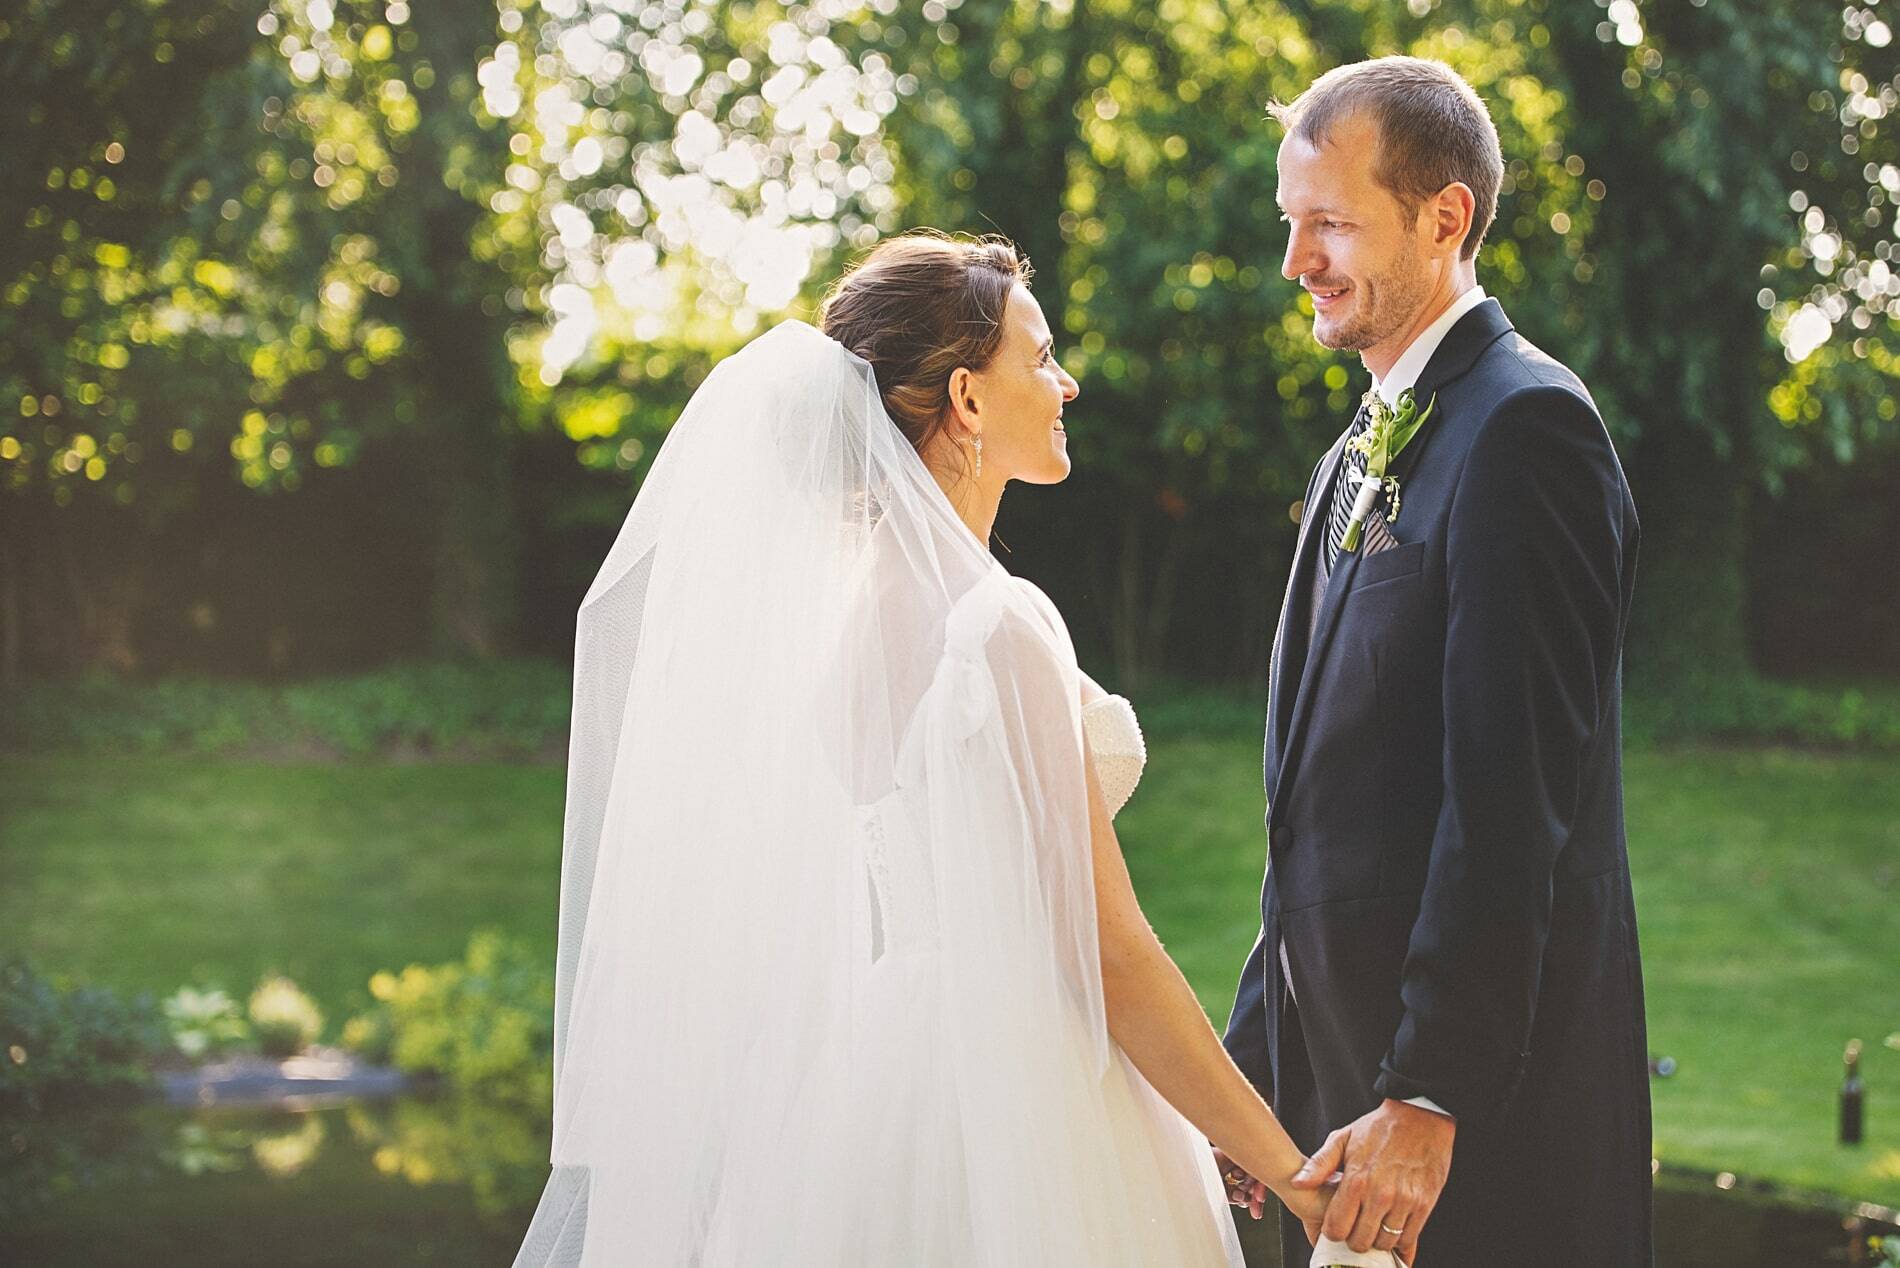 Newlywed love - Wedding of Lenka and Ondra - Wedding in Chateau Trnová